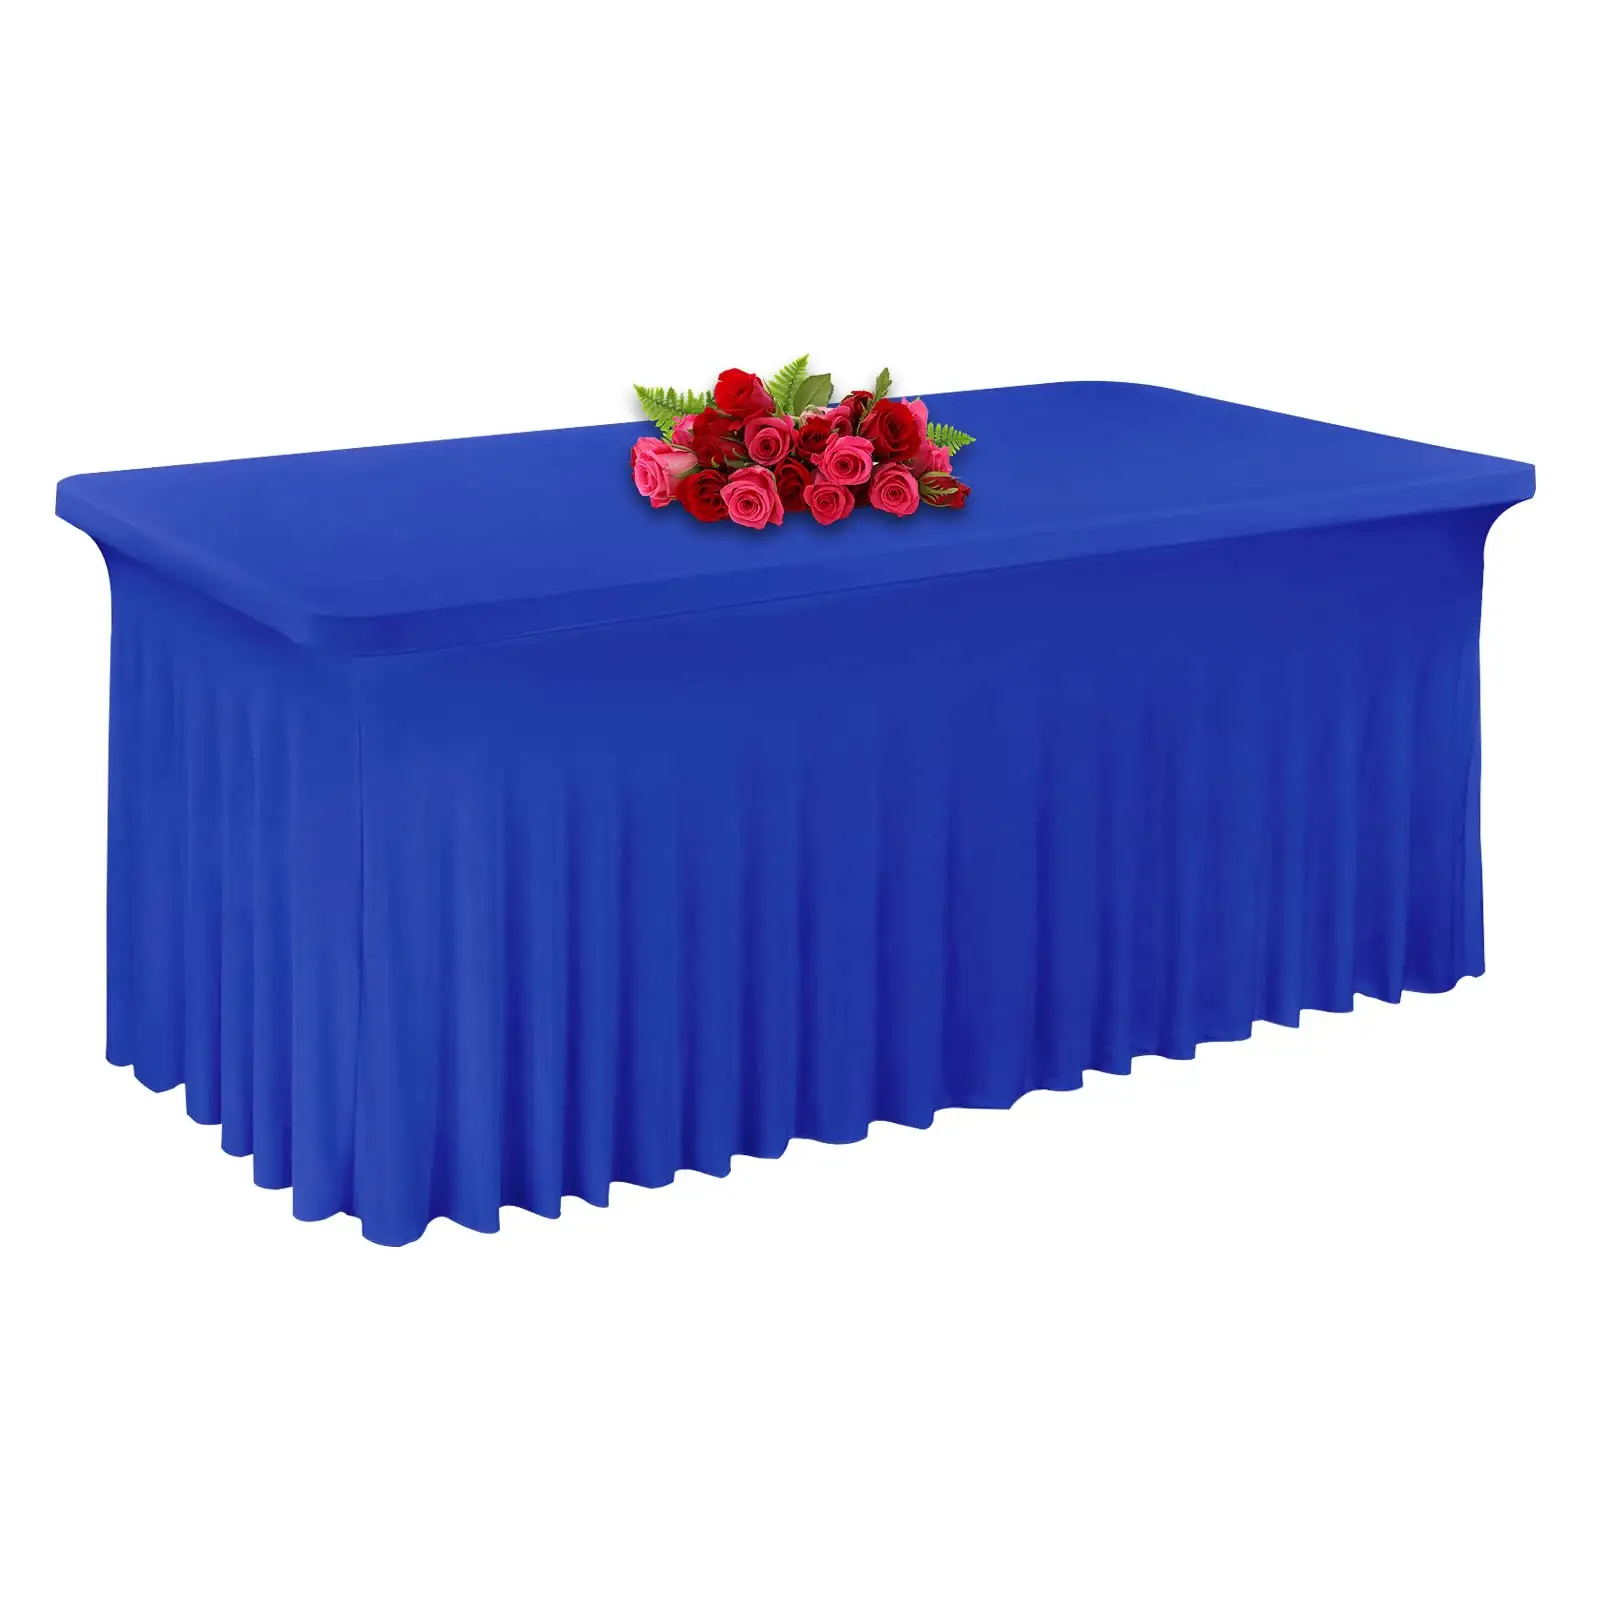 غطاء طاولة سبانديكس لتزيين الحدث من الكتان مع تنورة